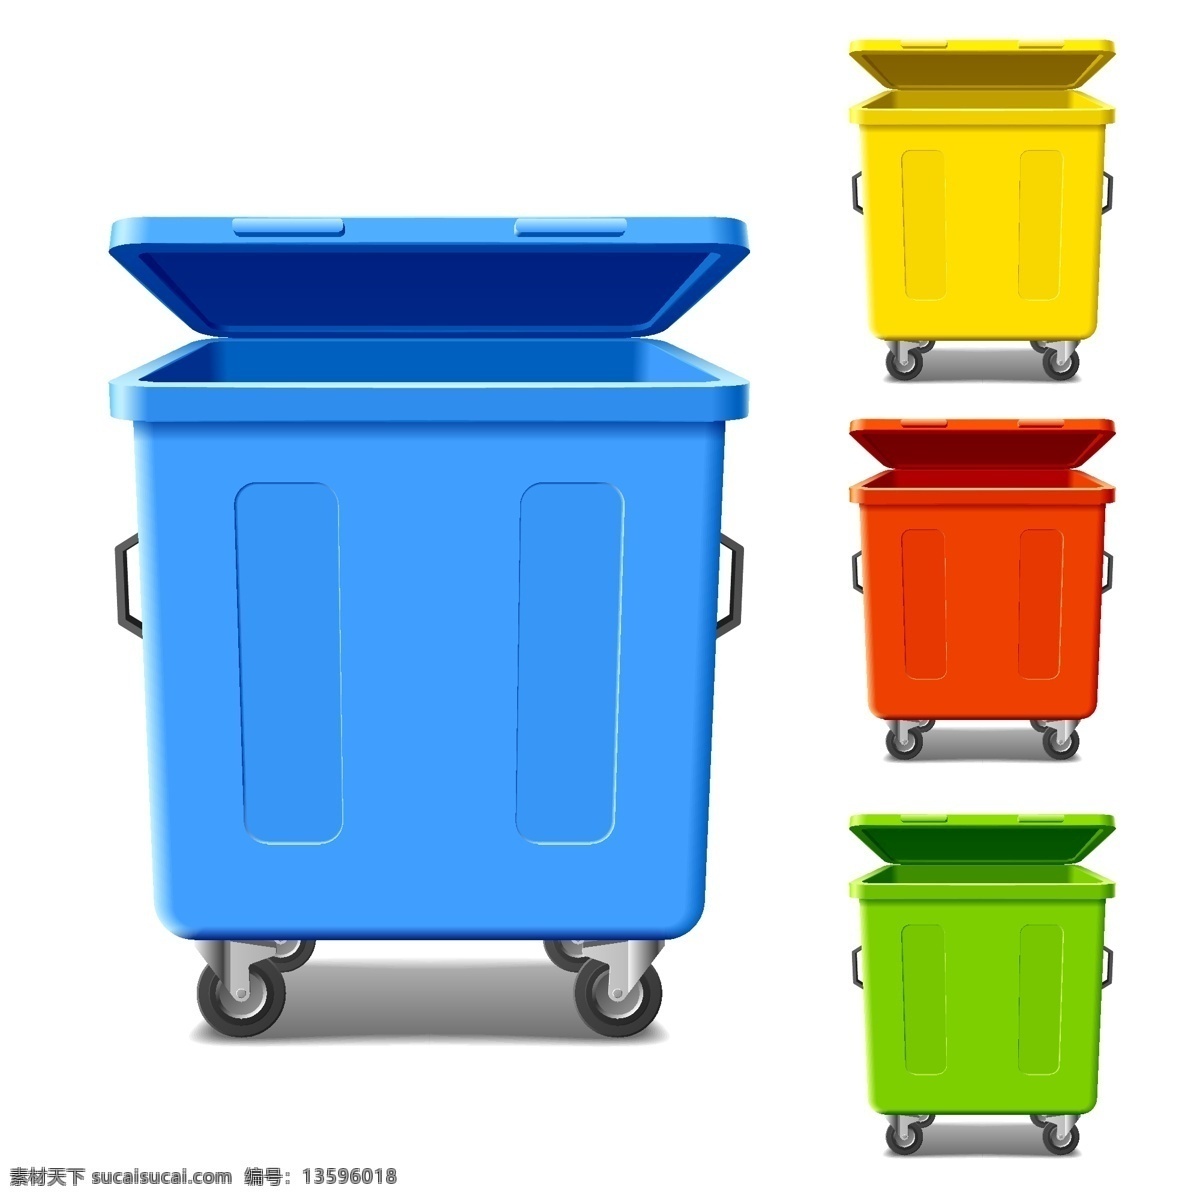 彩色 滚轮 垃圾桶 格式 矢量图 矢量 高清图片